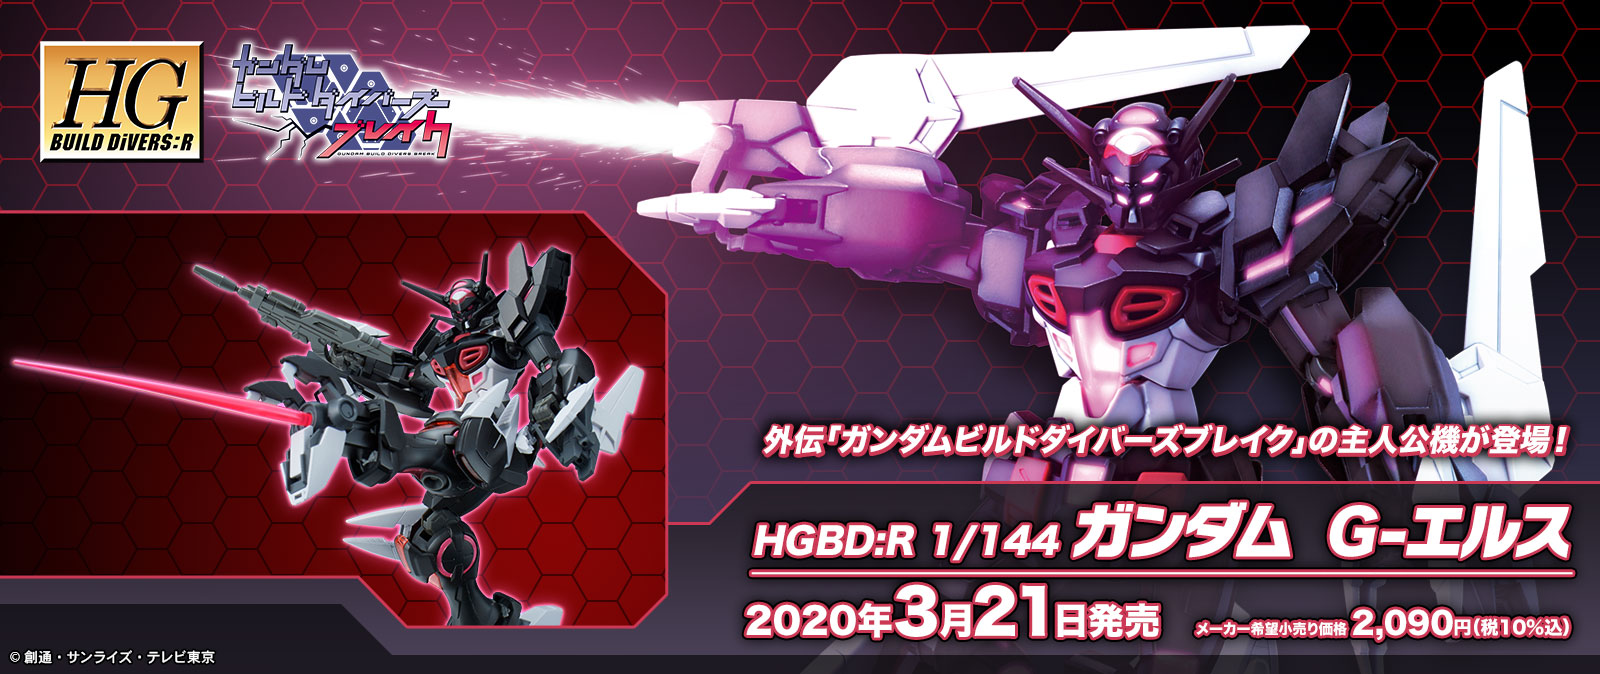 HGBD:R 1/144 No.20 YG-lll Gundam G-Else